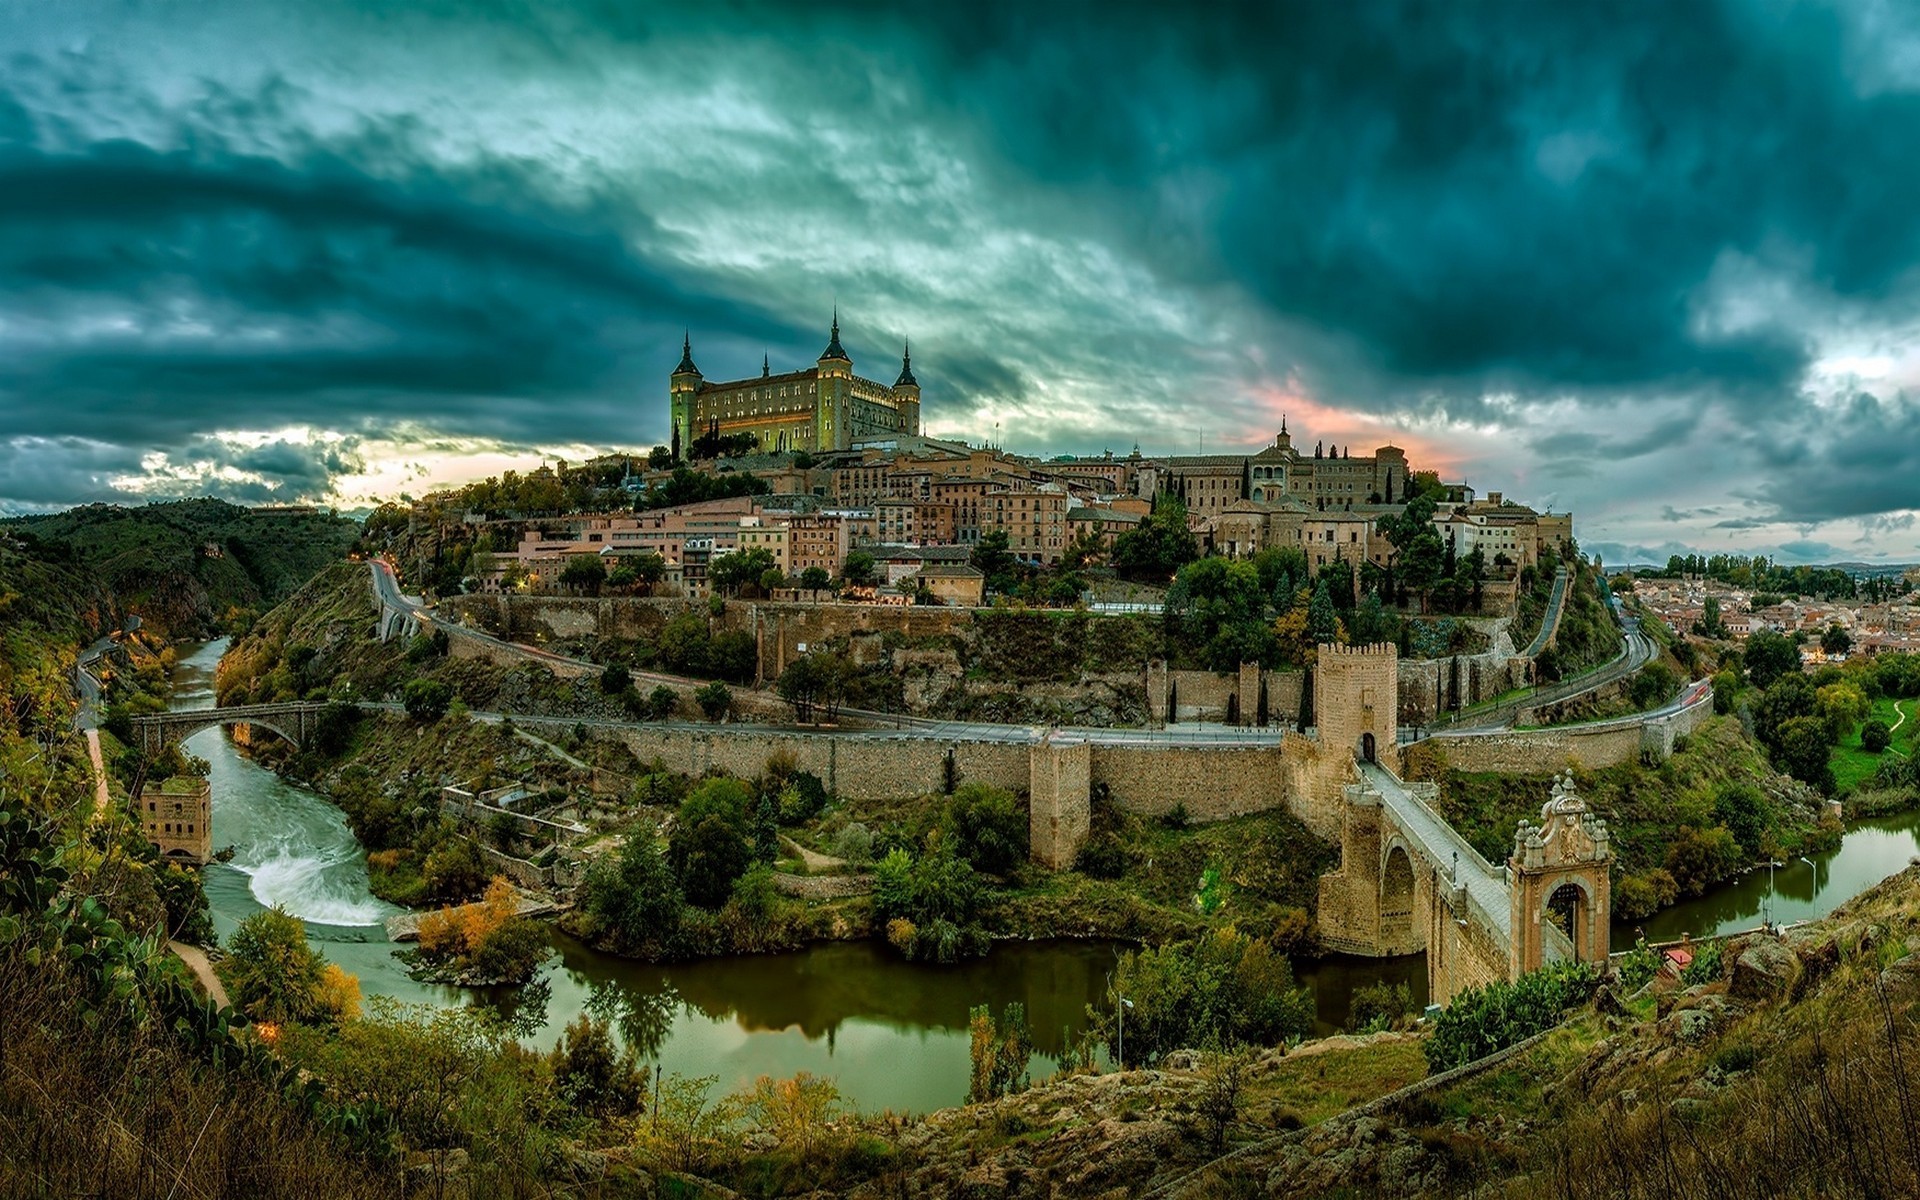 photography, Landscape, Toledo, City, River, Bridge, Building, Architecture, Hills, Sunset, Clouds, Spain Wallpaper